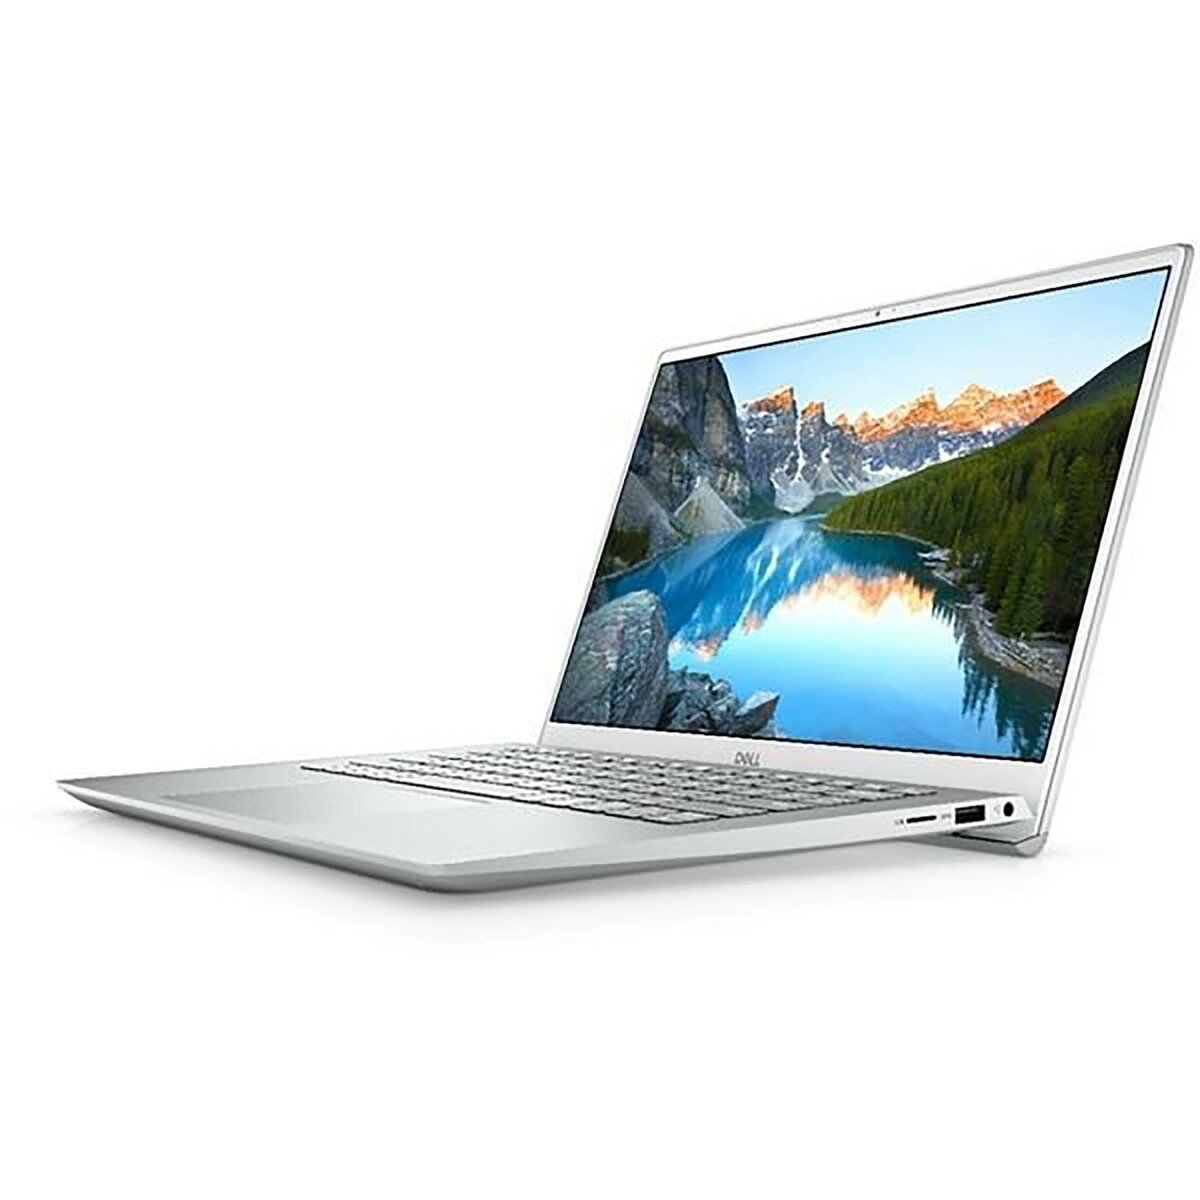 Dell Inspiron 5405 Laptop, Ryzen 7-4700U, 8GB RAM, 512GB SSD, 14" FHD Laptop, Silver,English Arabic Keyboard